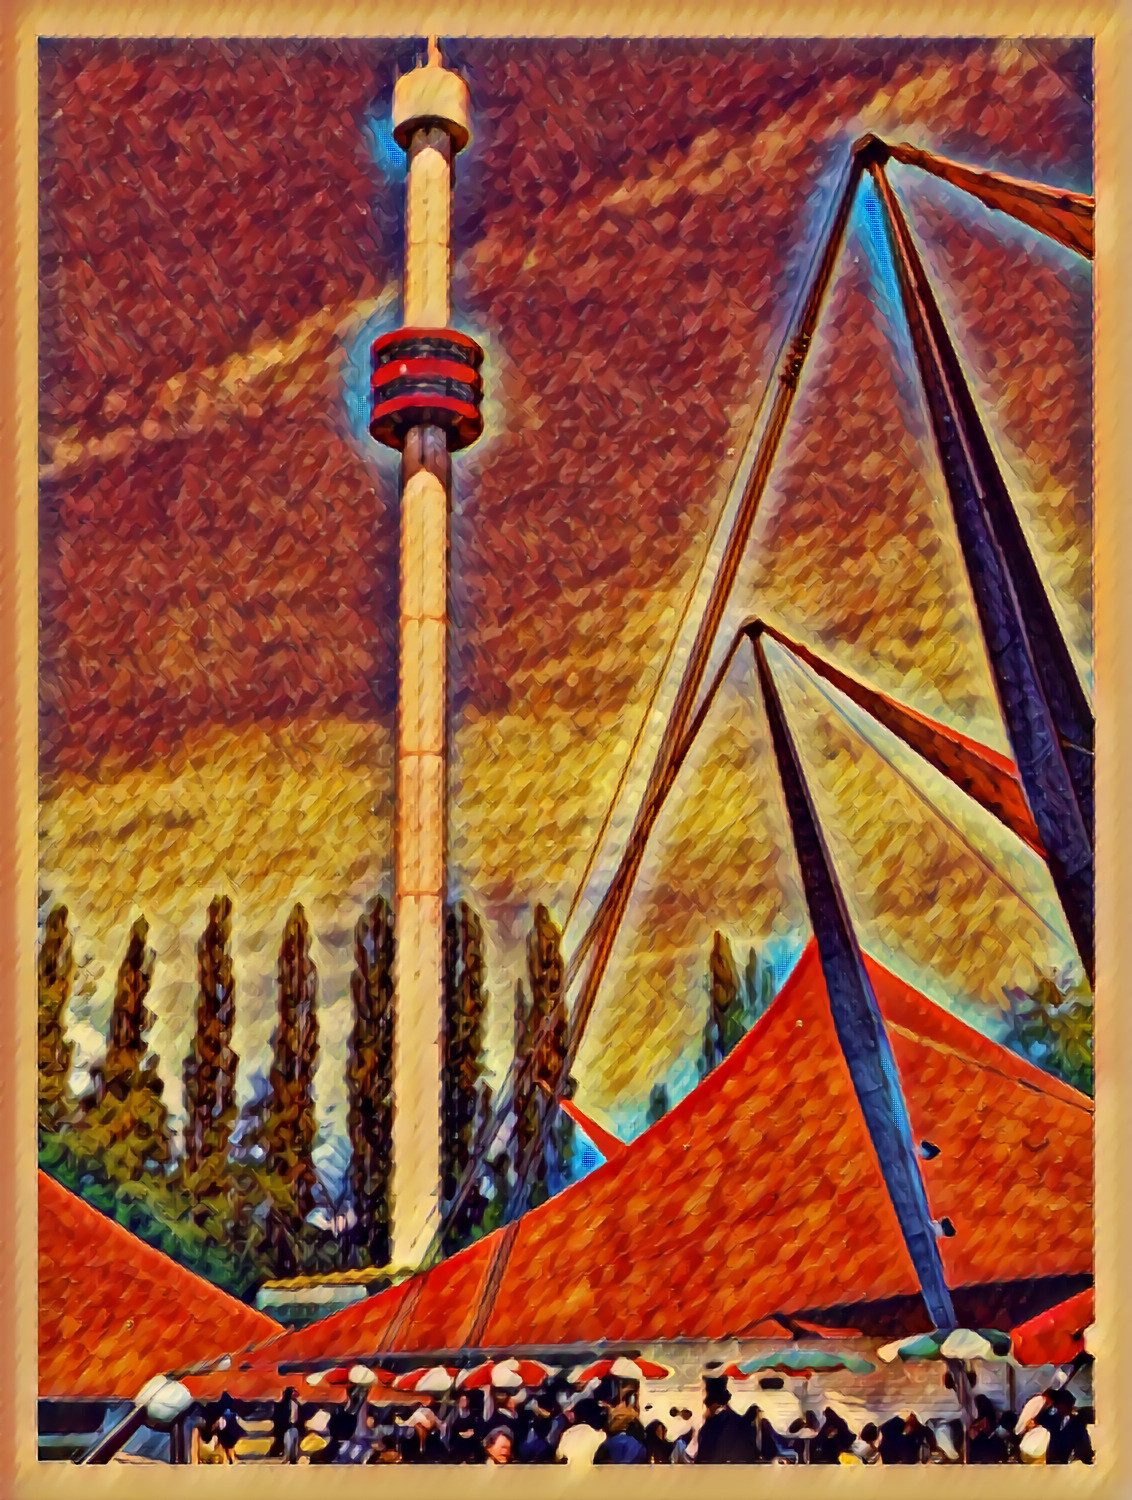 Tower of La Ronde, Expo 67 (Montreal) / Essay No.5